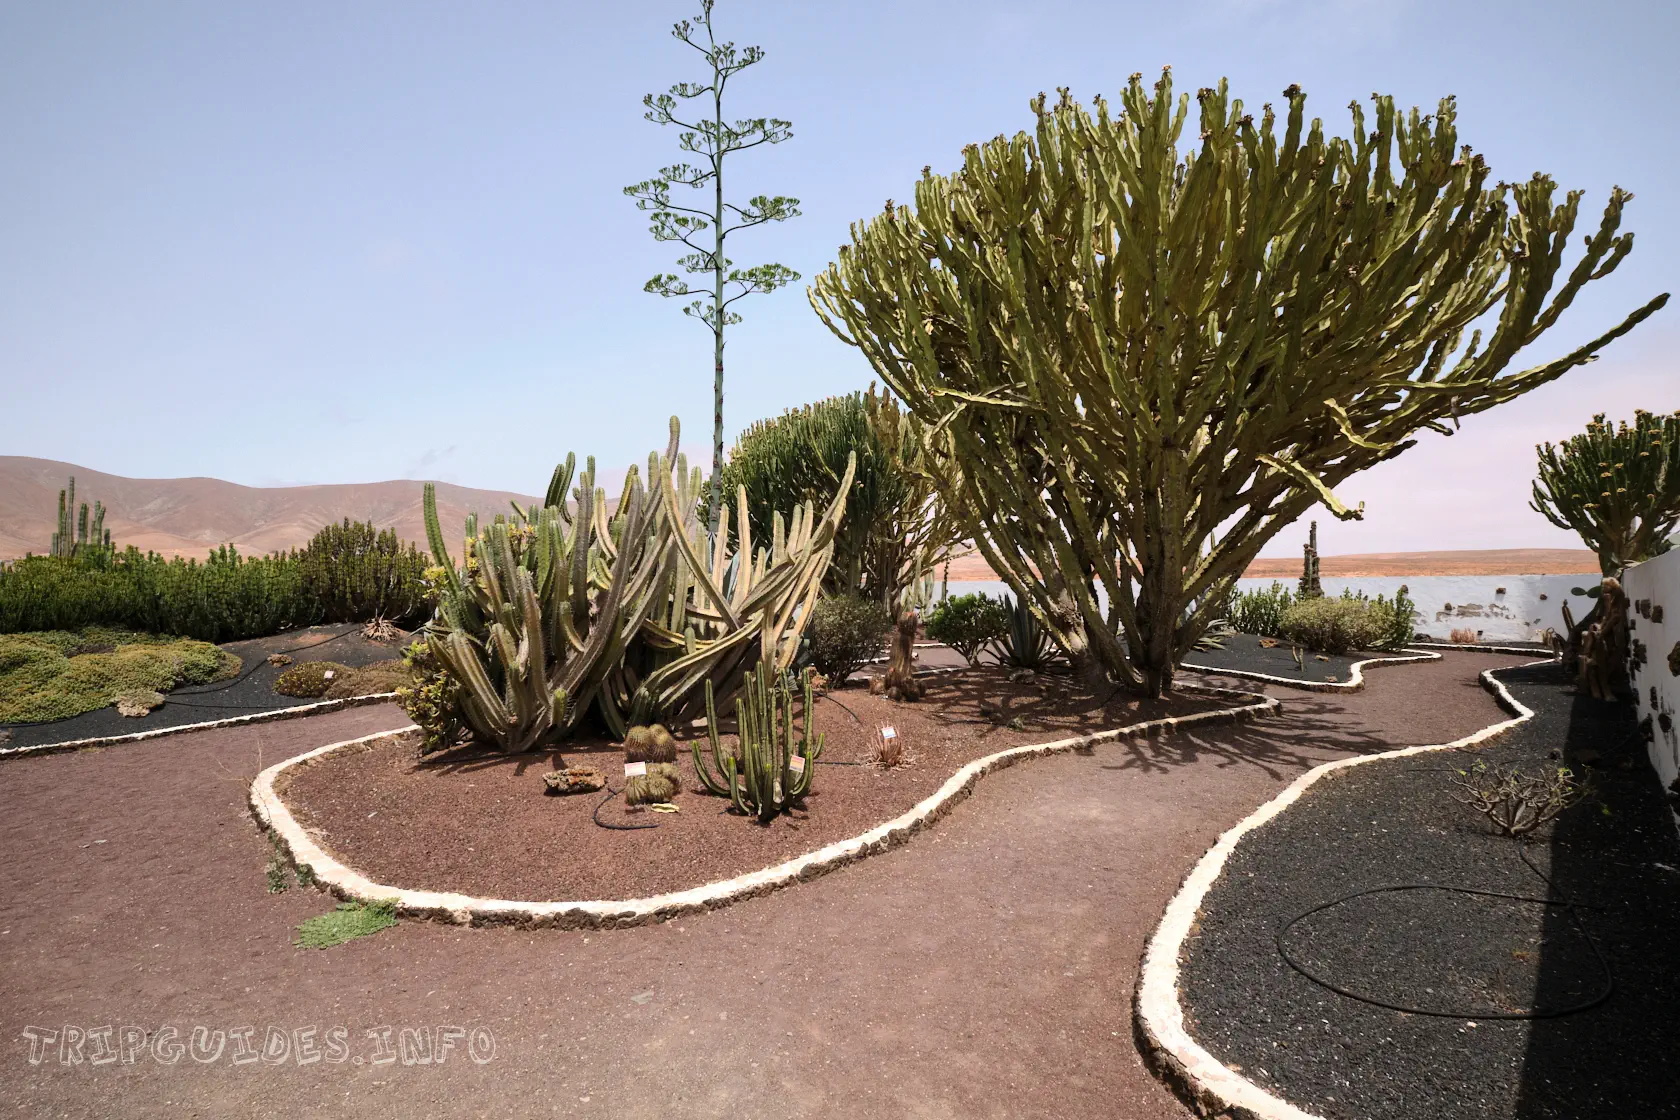 Сад кактусов в музее козьего сыра Махореро - Фуэртевентура